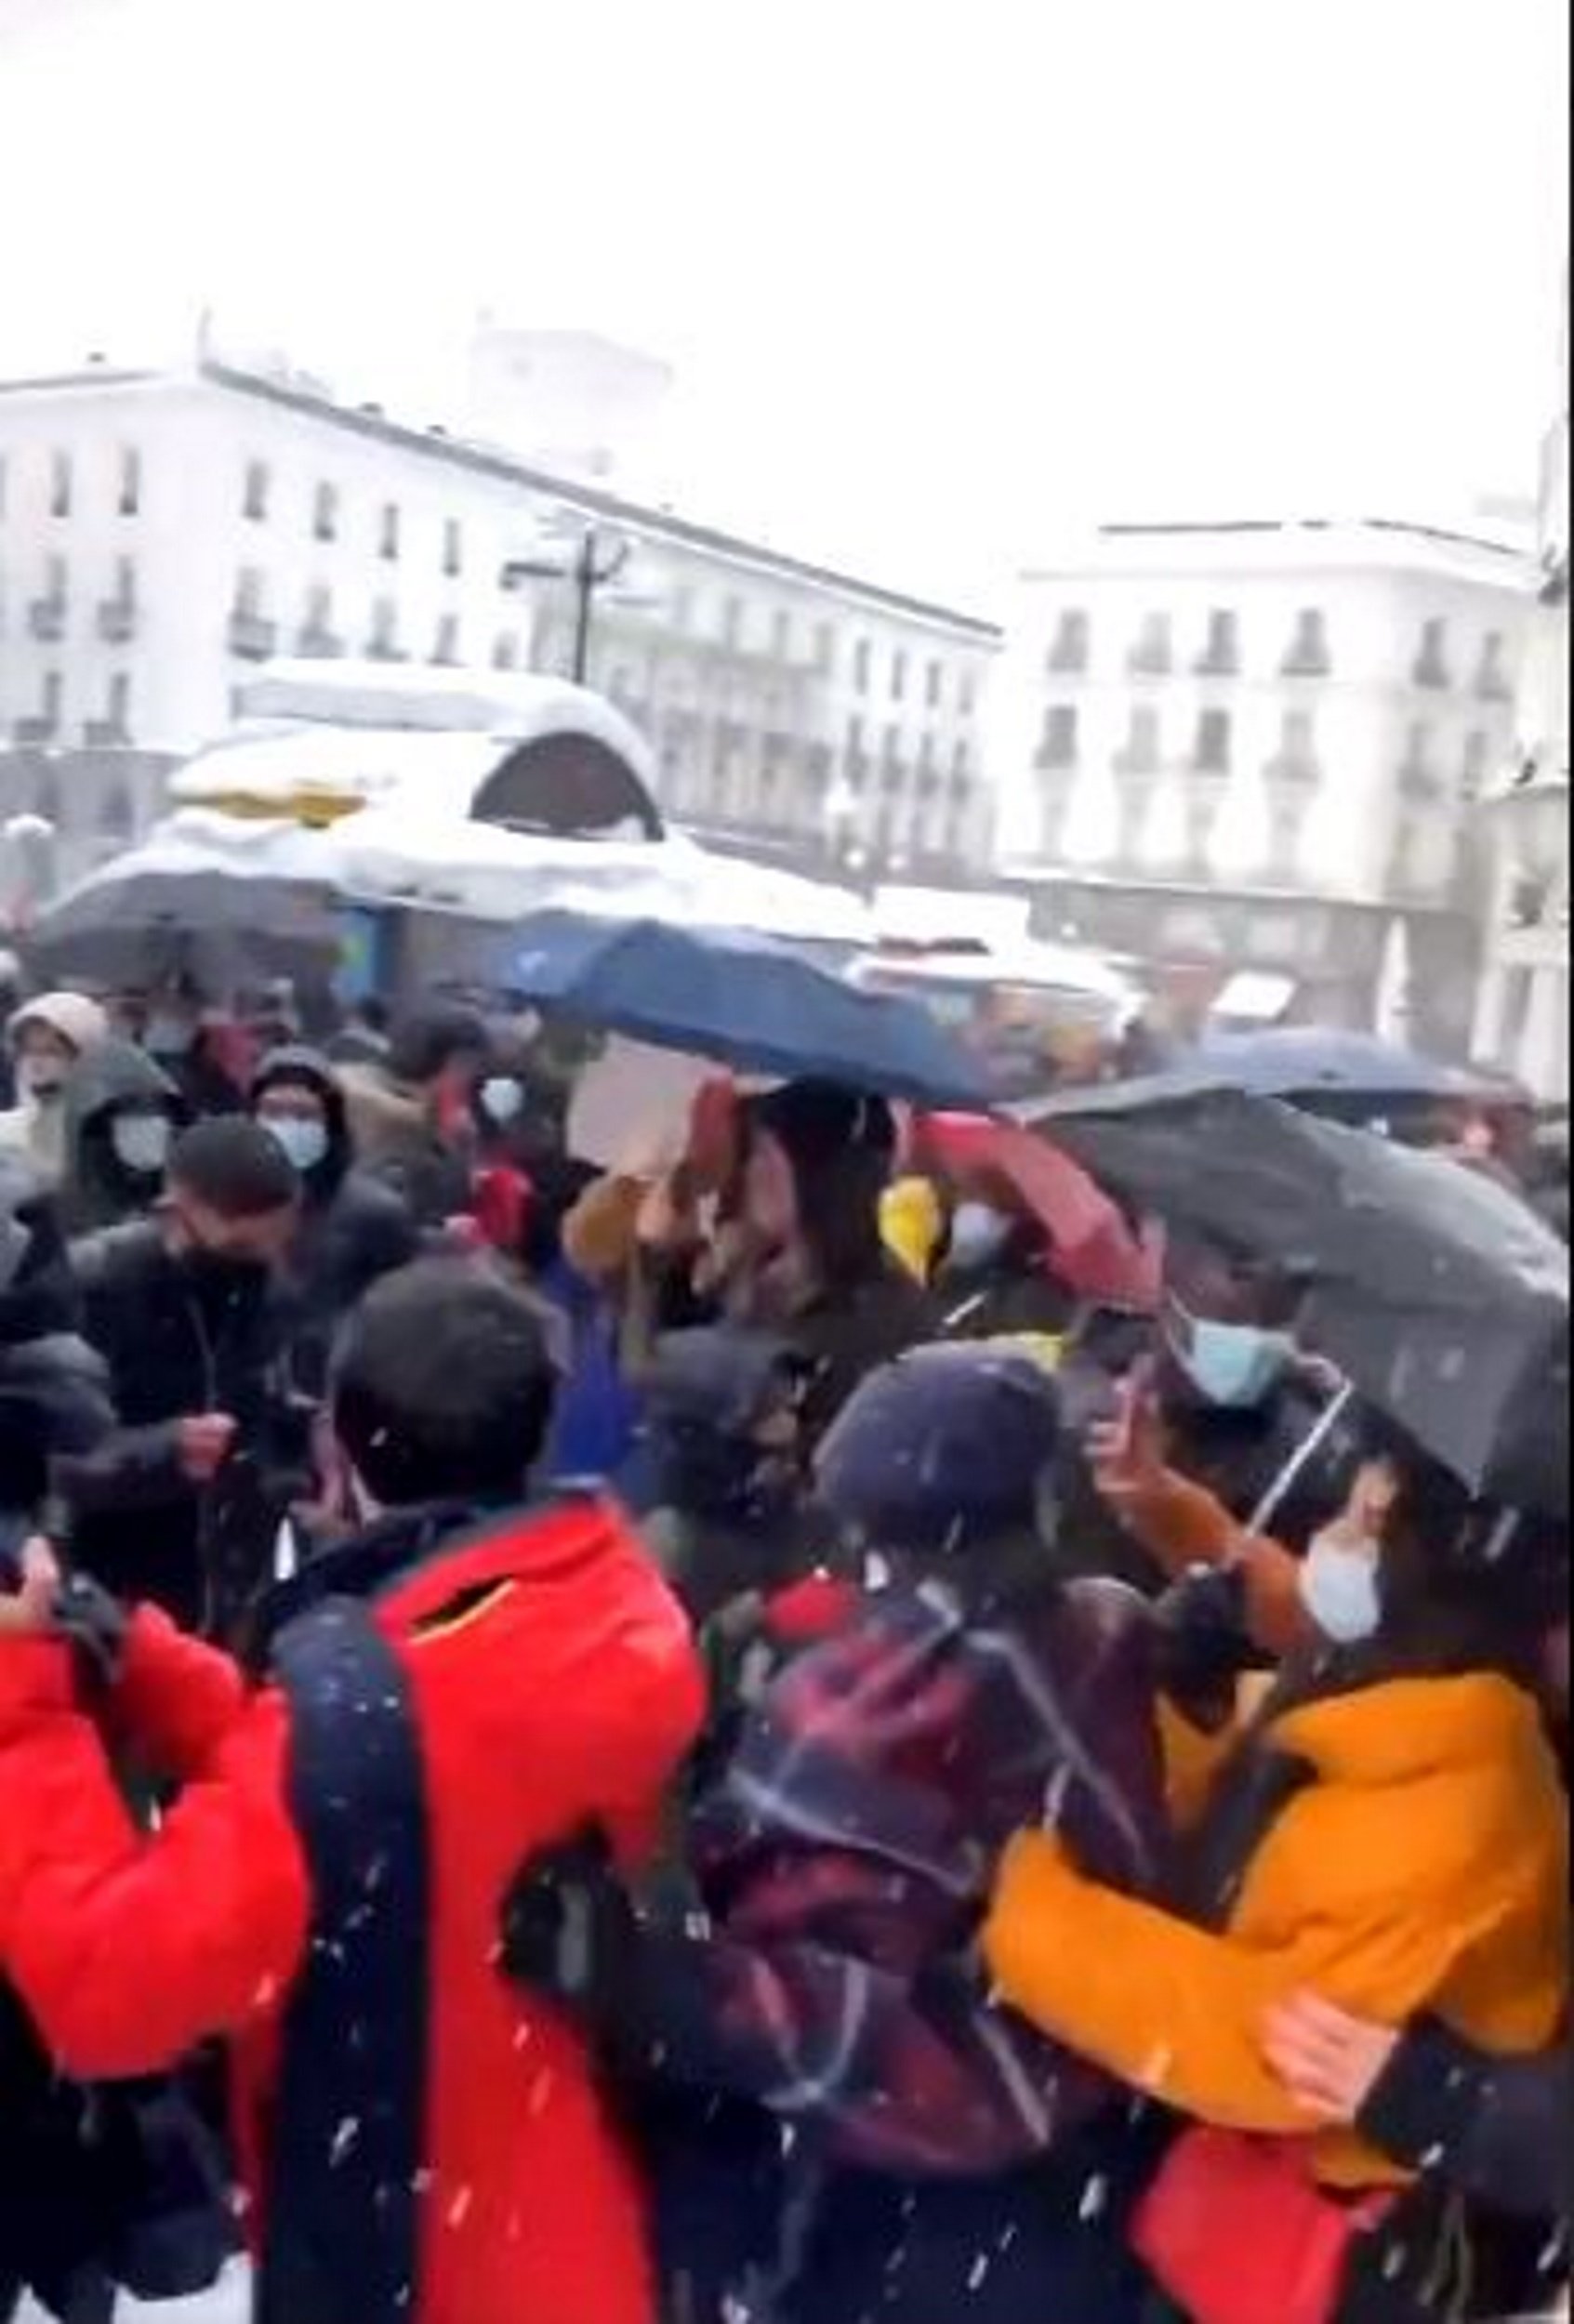 Caos en el centro de Madrid: batalla de bolas de nieve y discoteca improvisada